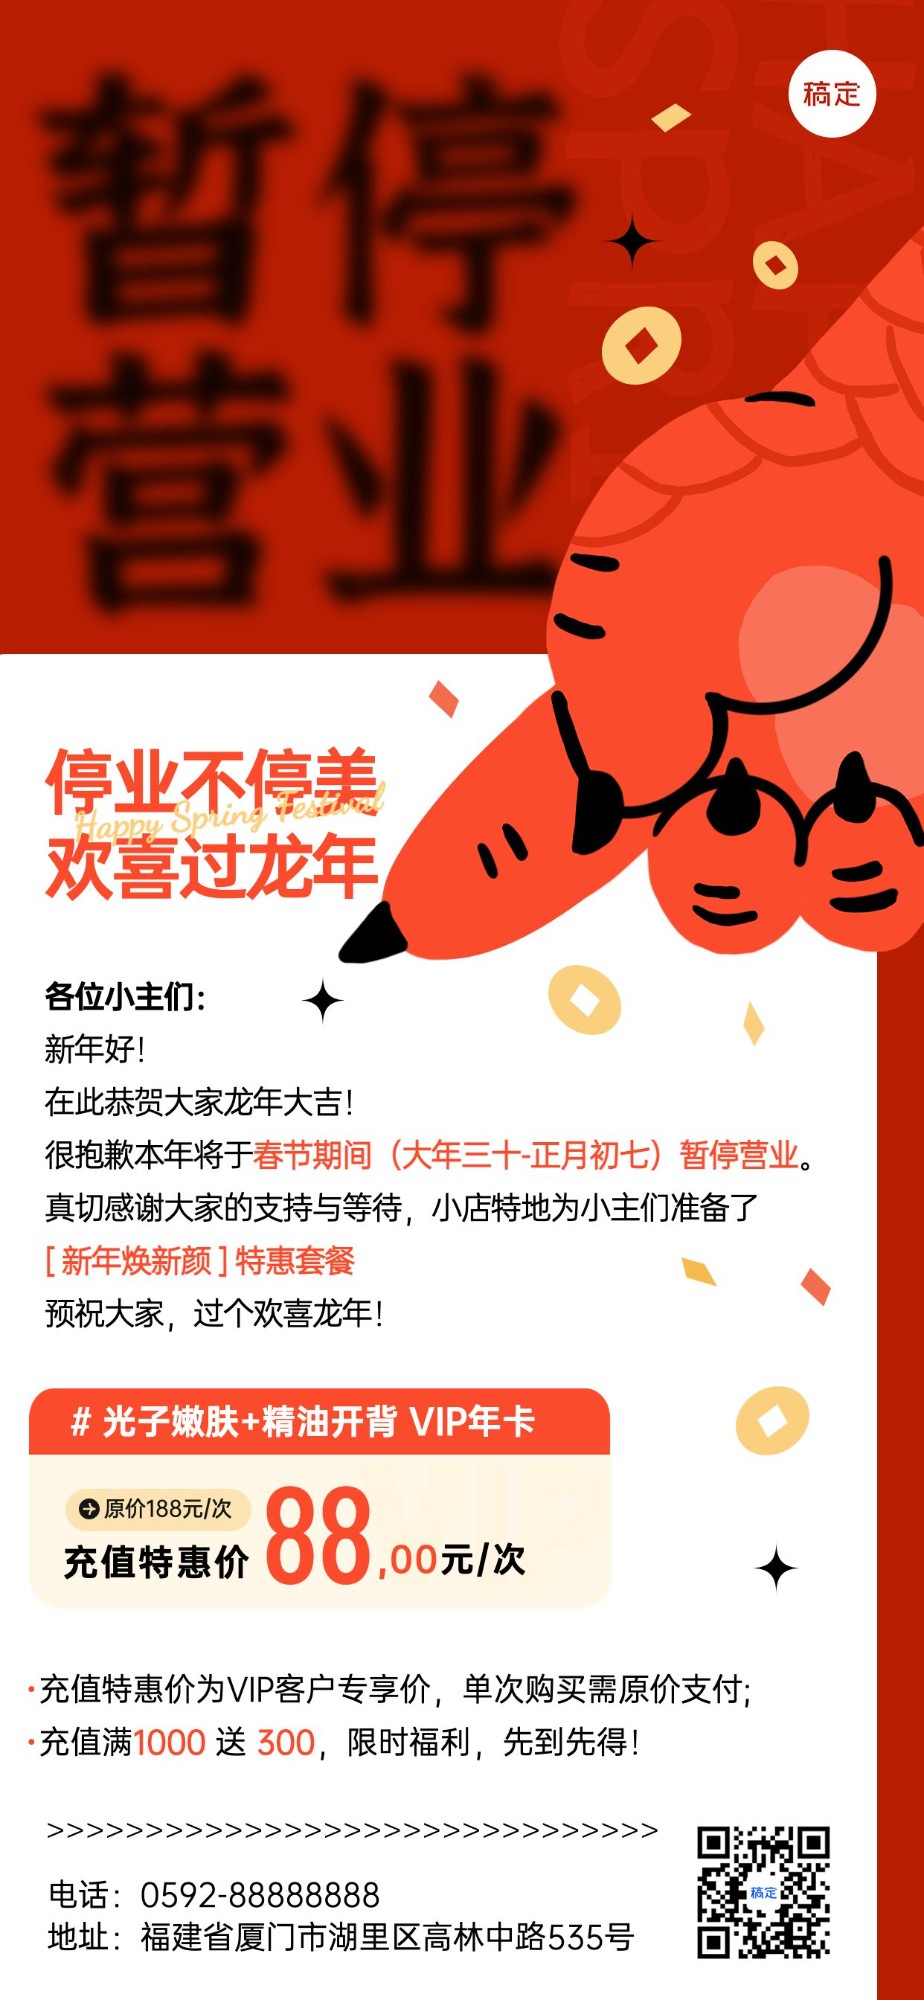 春节美业门店暂停营业通知公告充值卡项促销活动全屏竖版海报